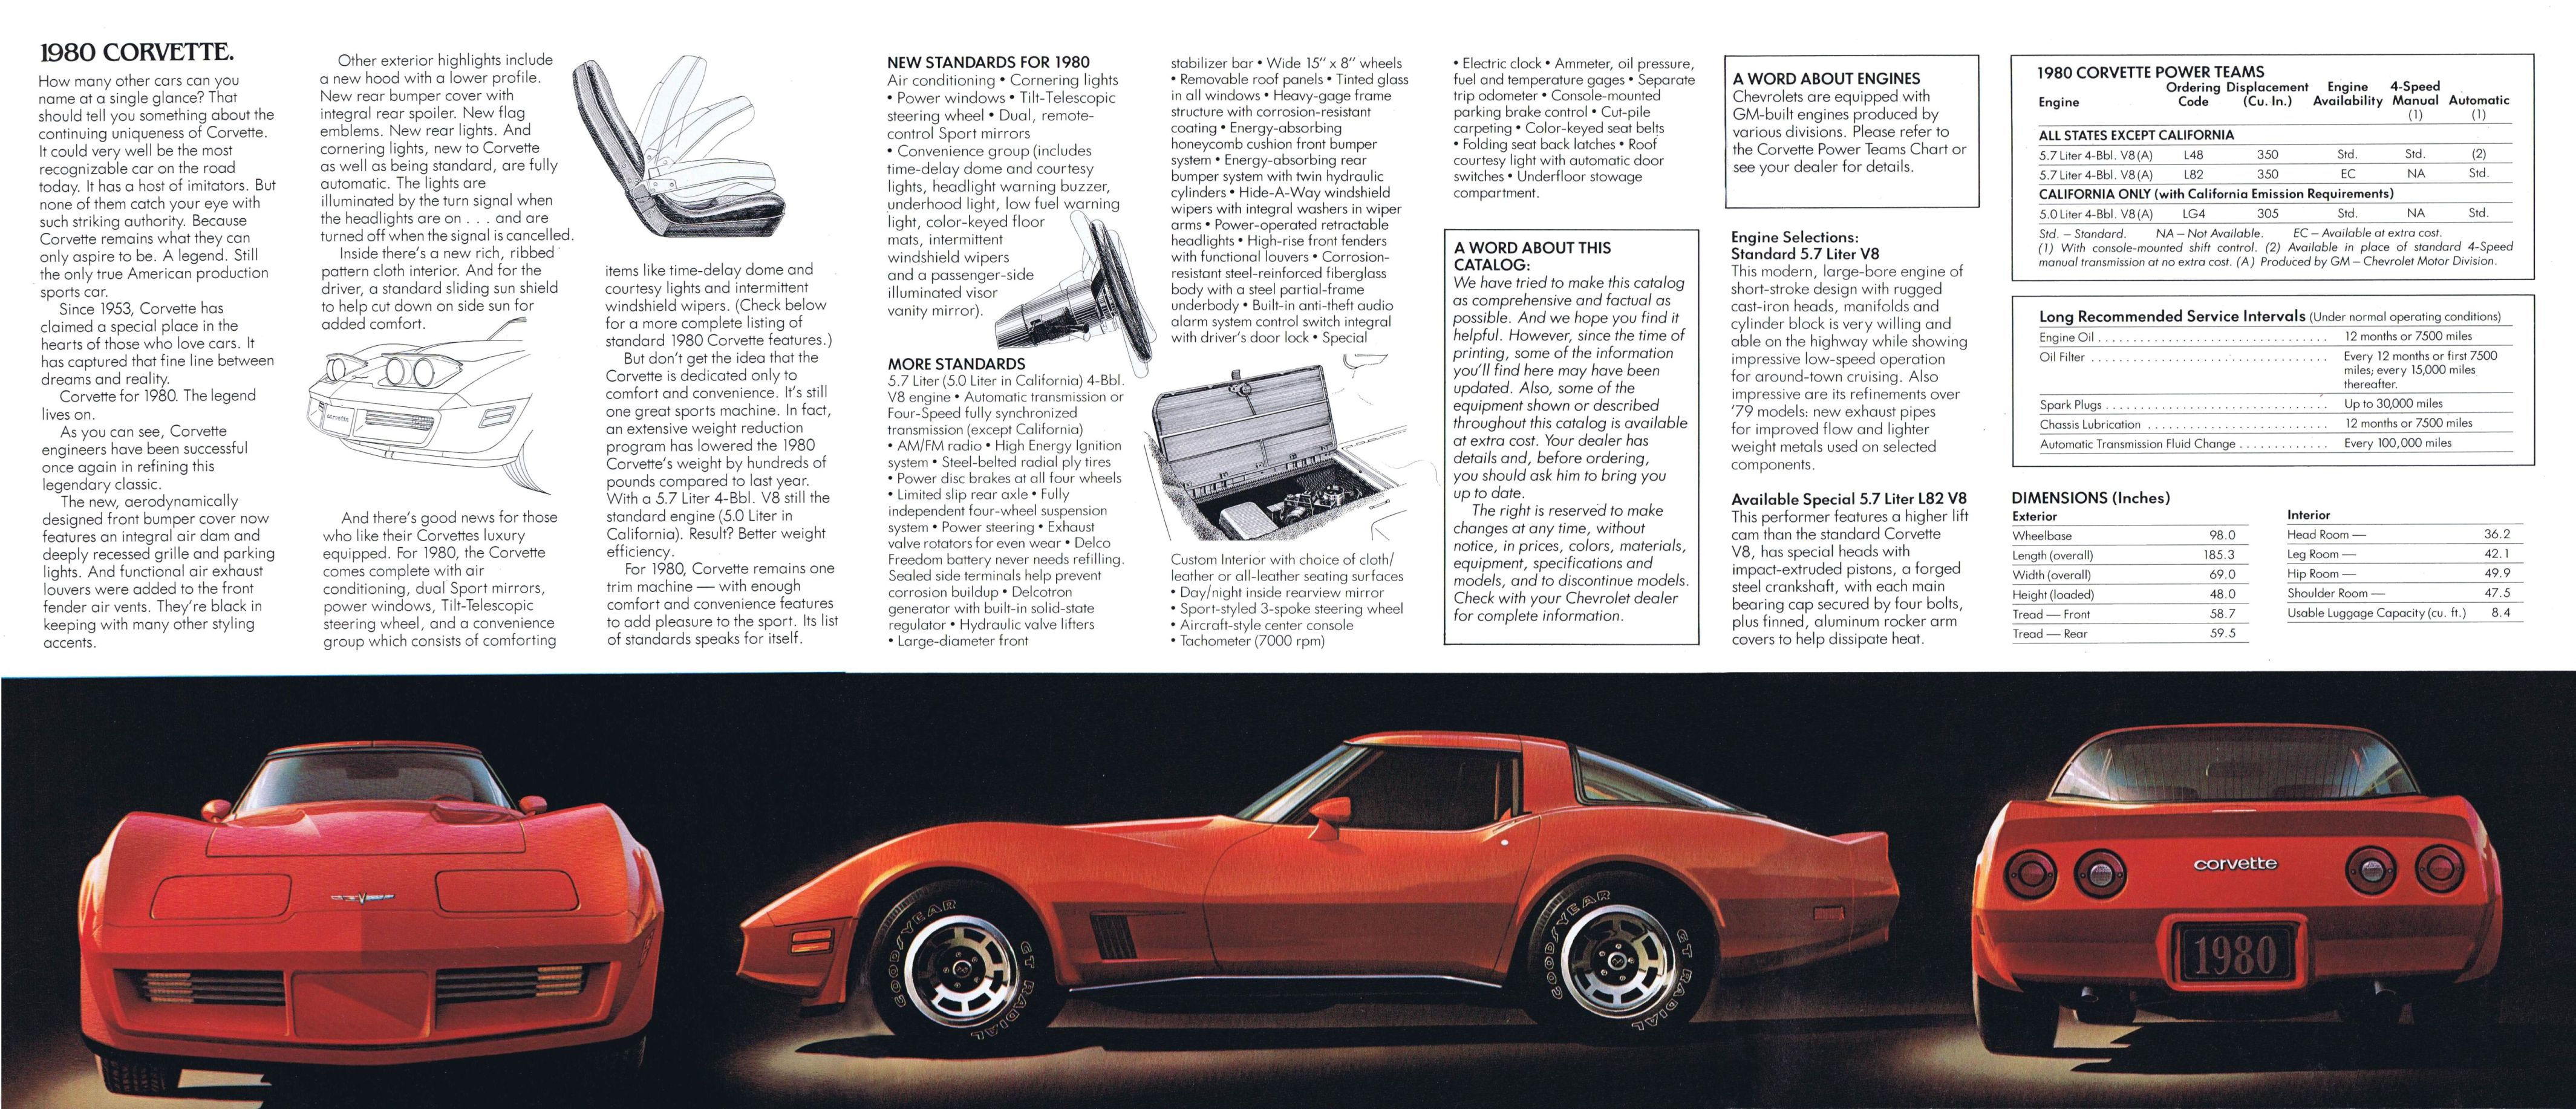 1980 Chevrolet Corvette brochure4259 x 1834